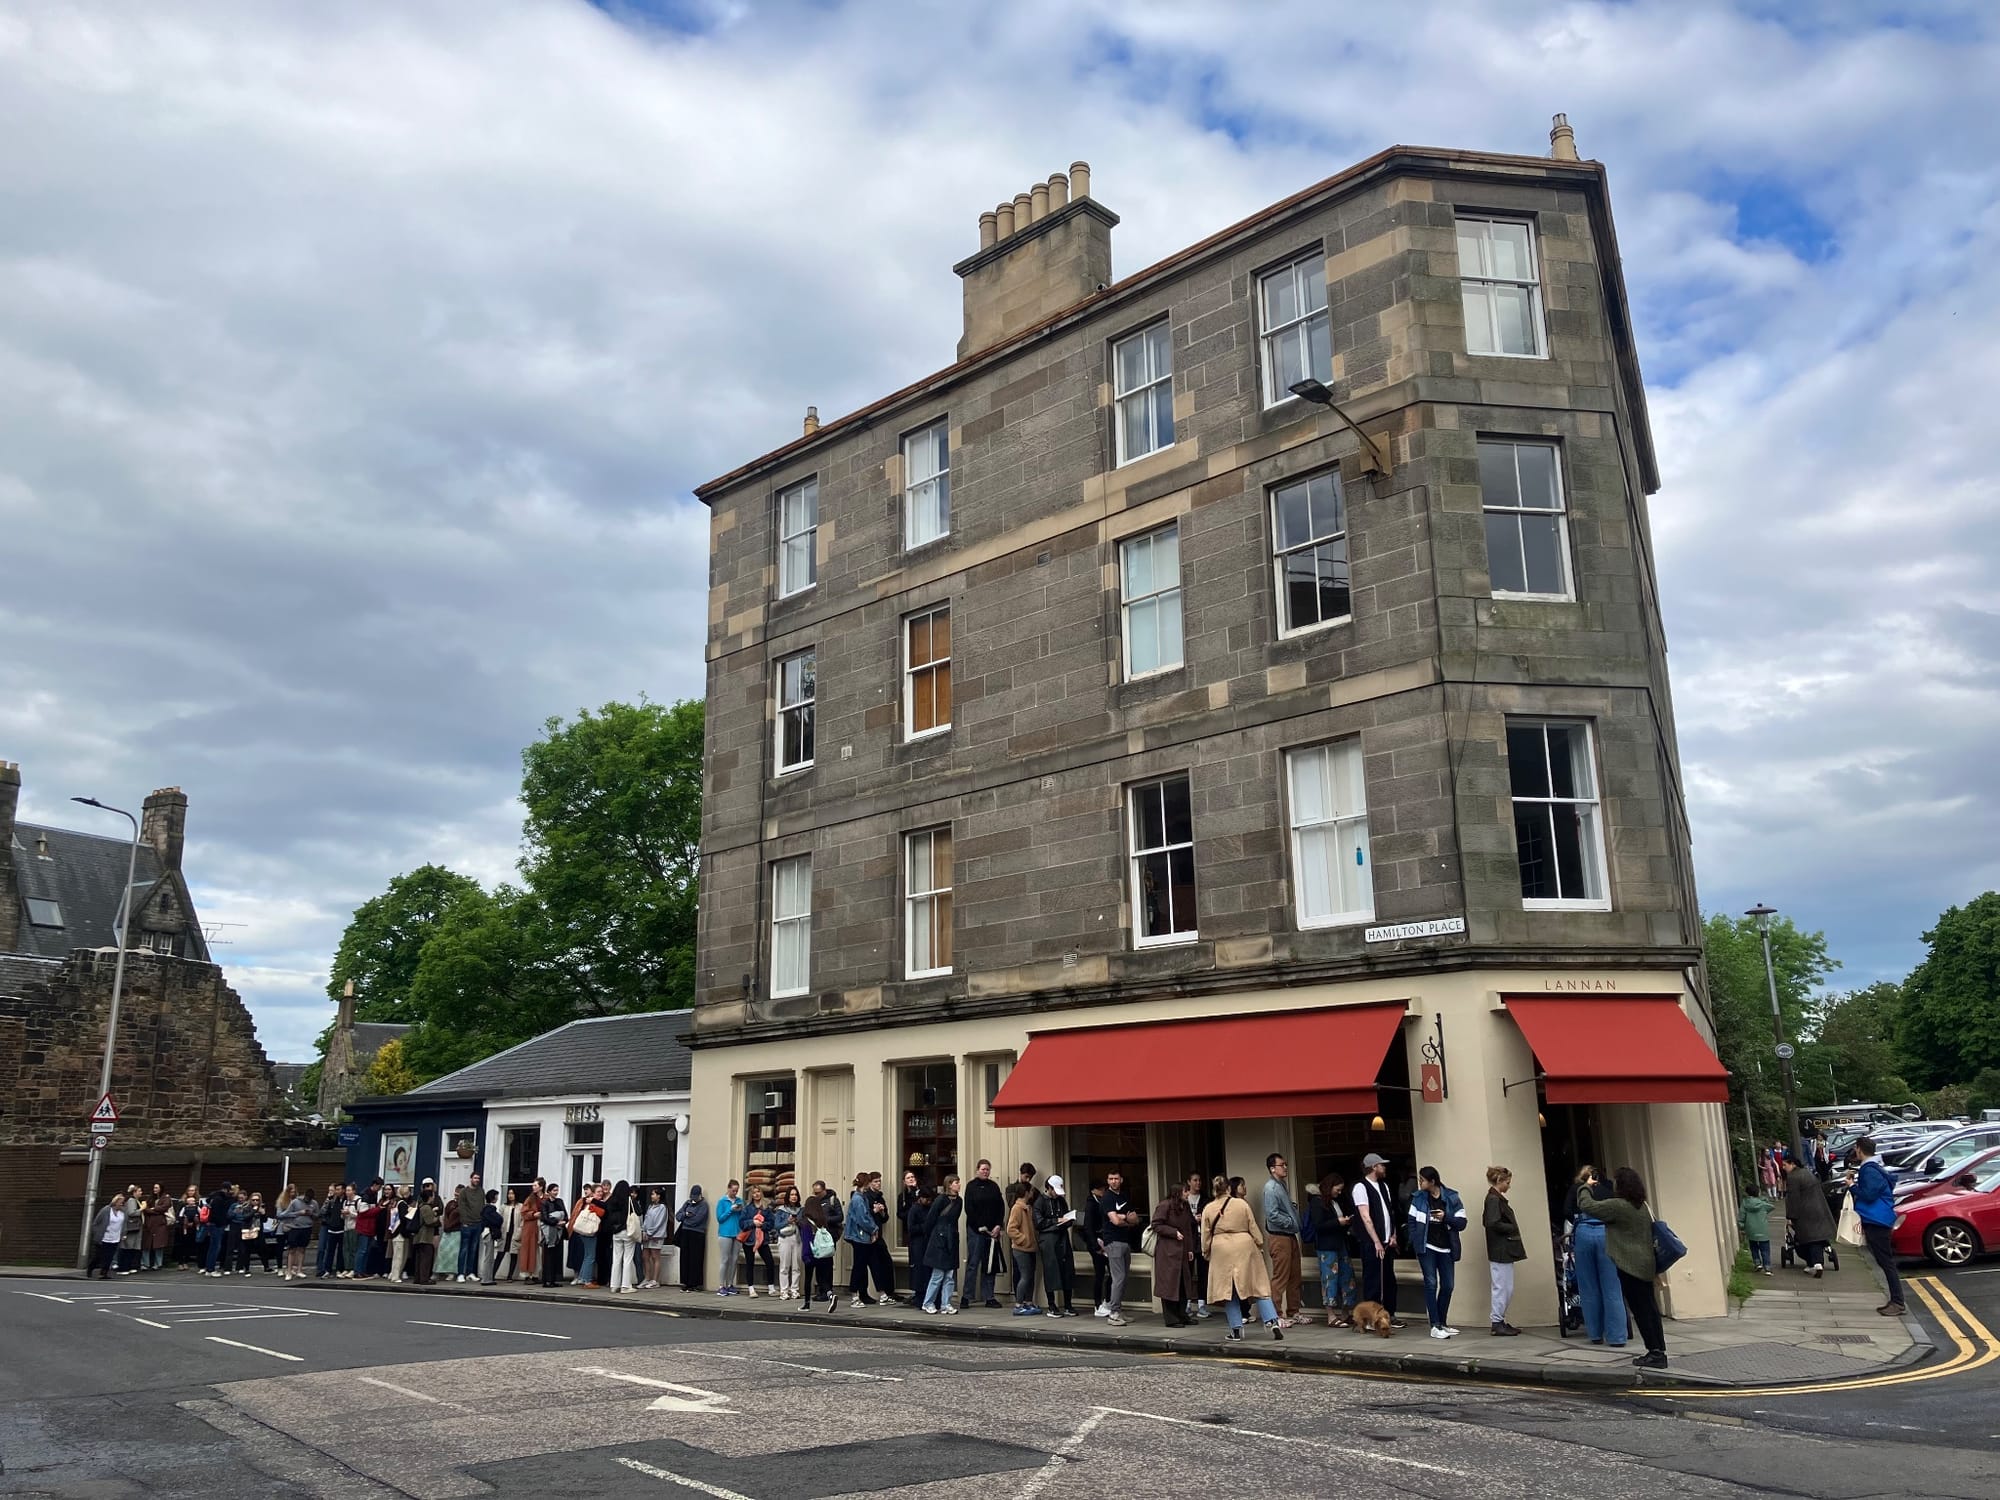 Edinburgh busy bakery queue